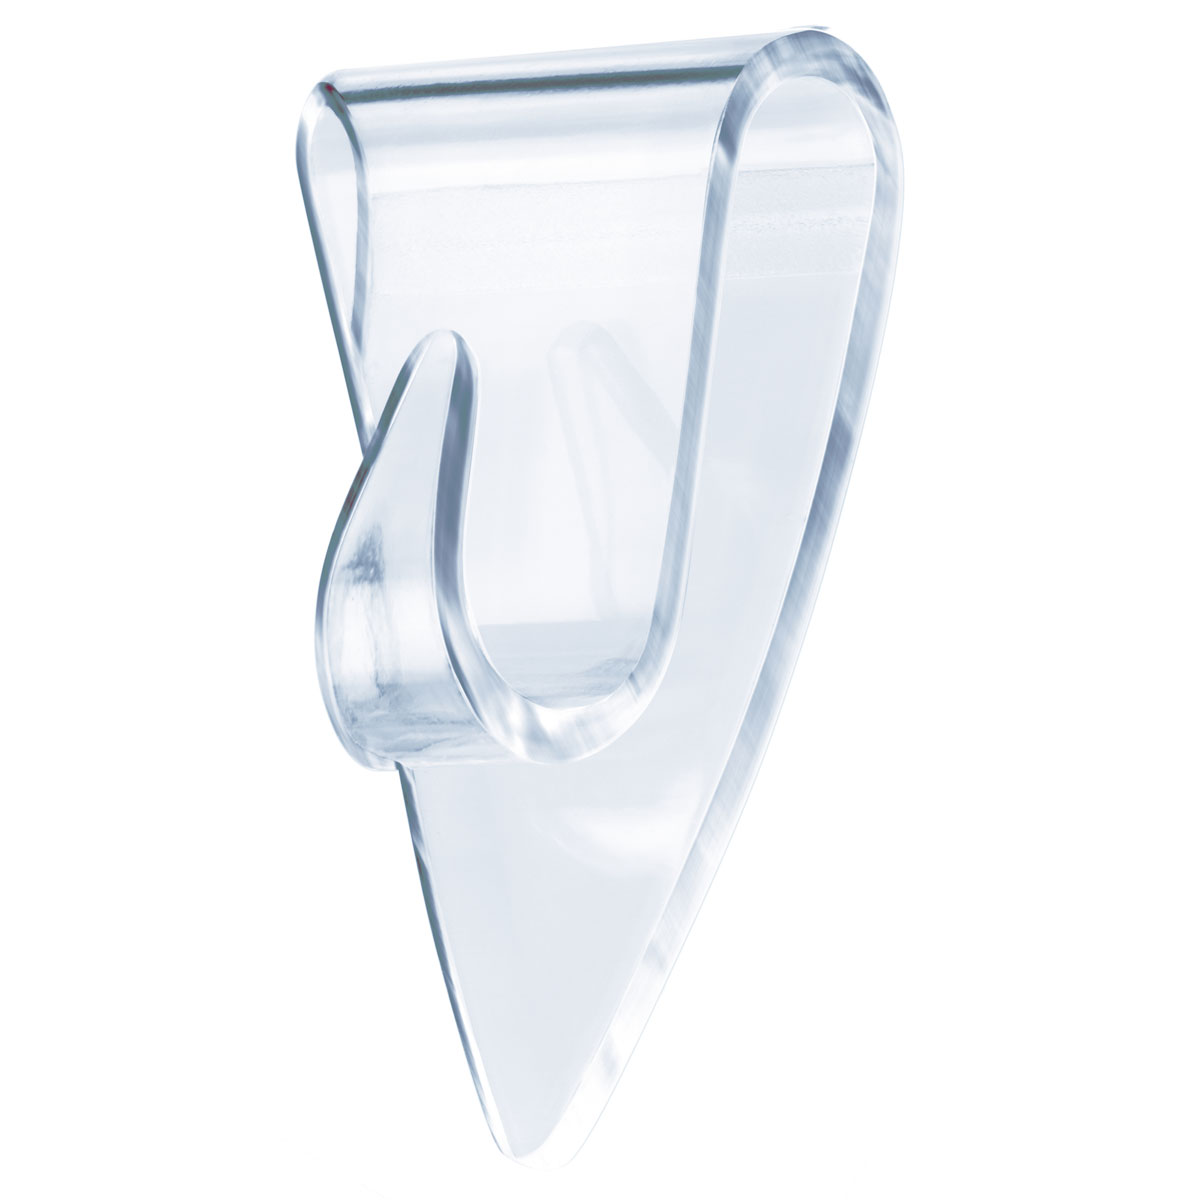 Tesa Klebehaken transparent Glas 5 Stück Traglast 5 x 0,2 kg